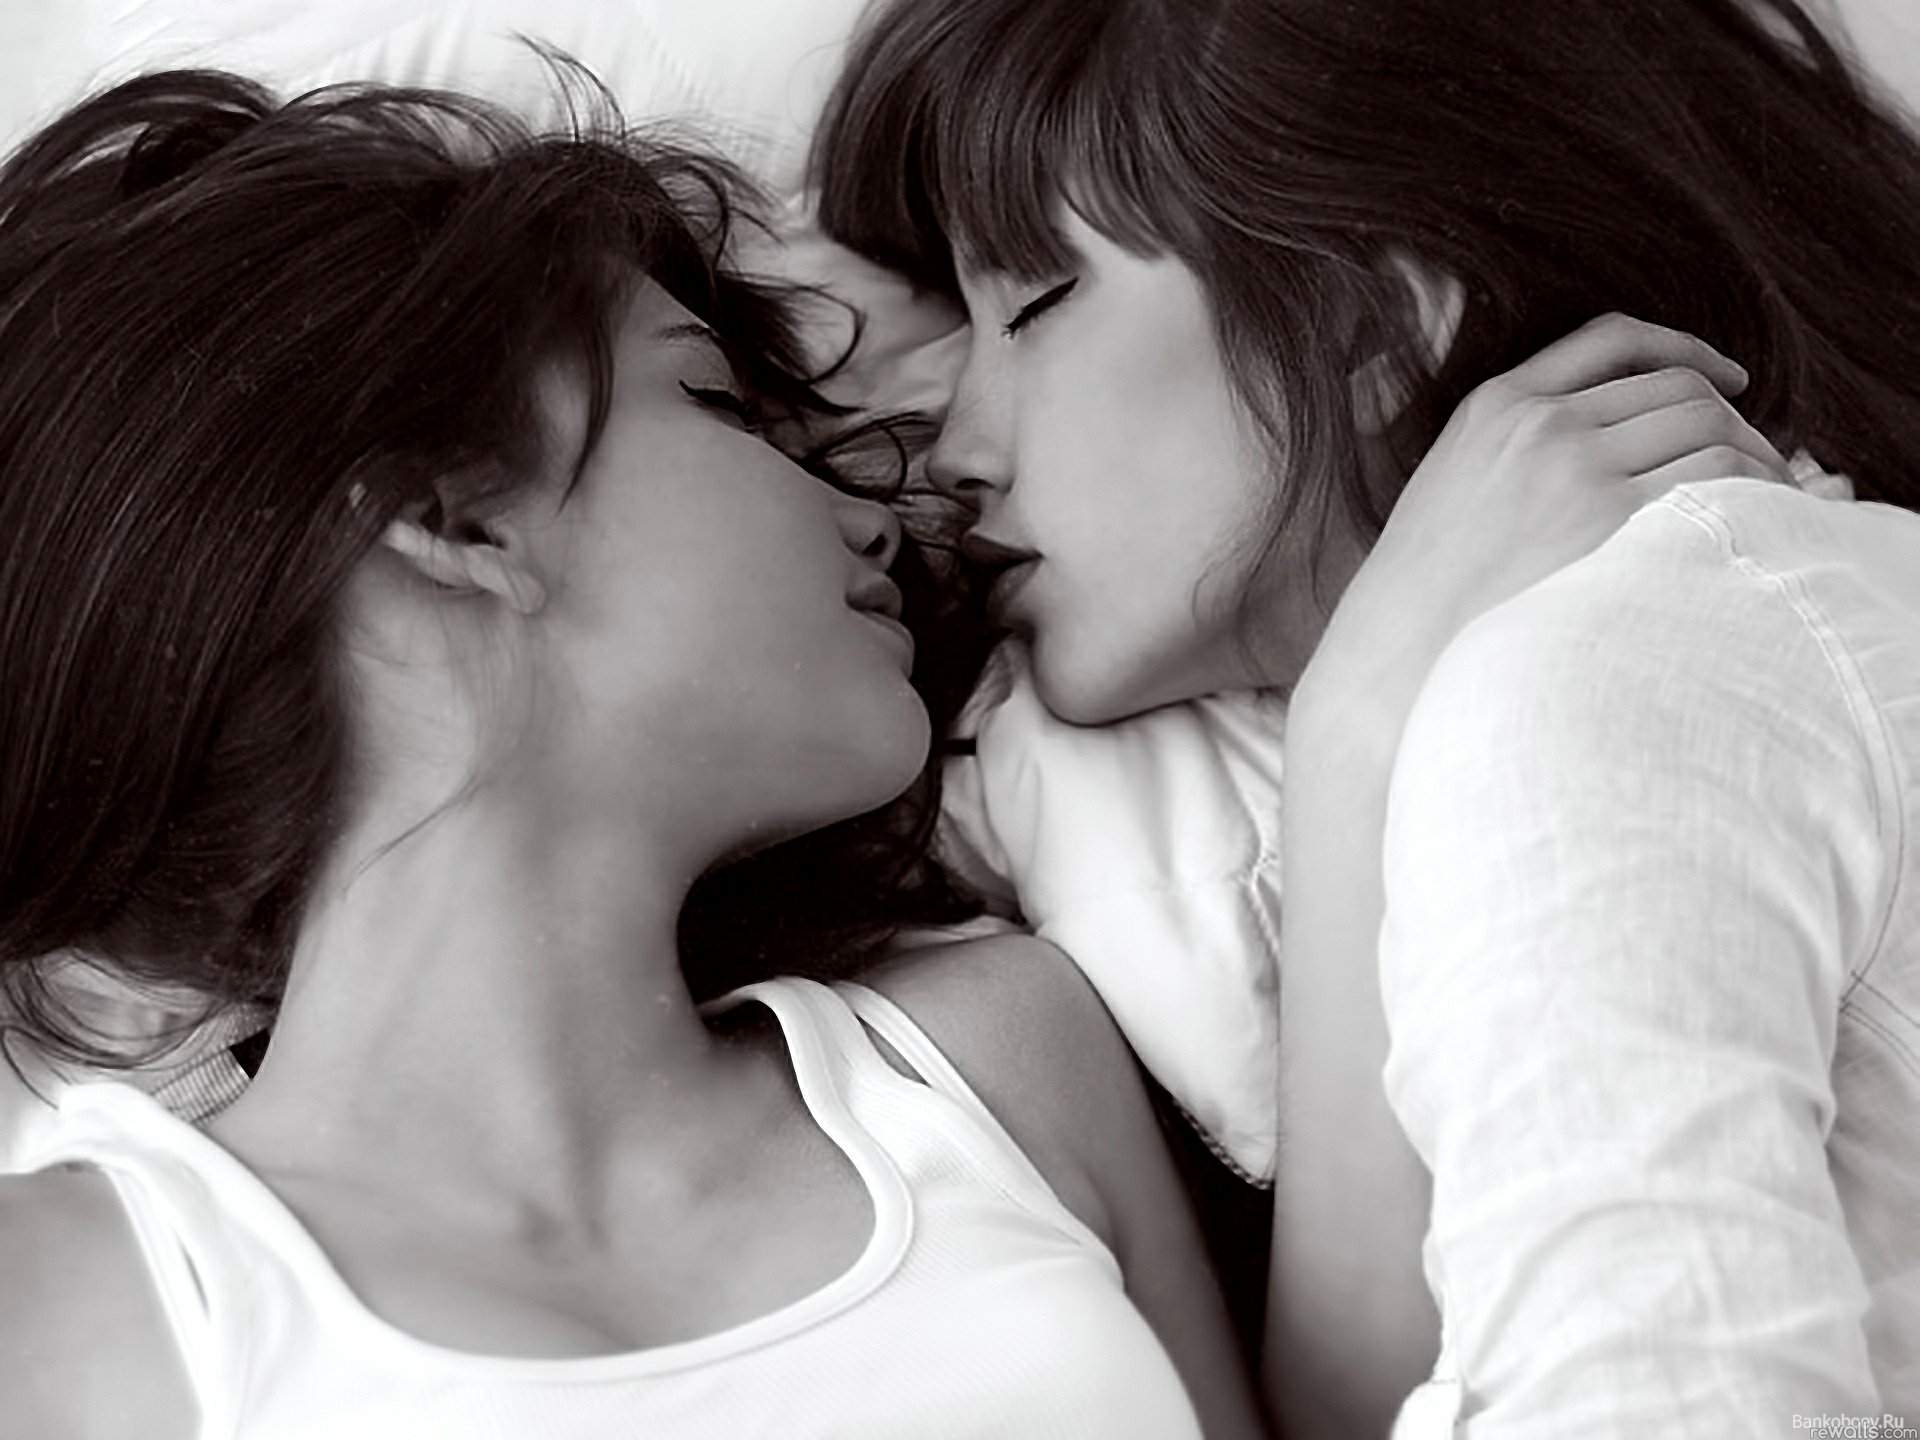 Lesbian petit teen strapon kissing tube